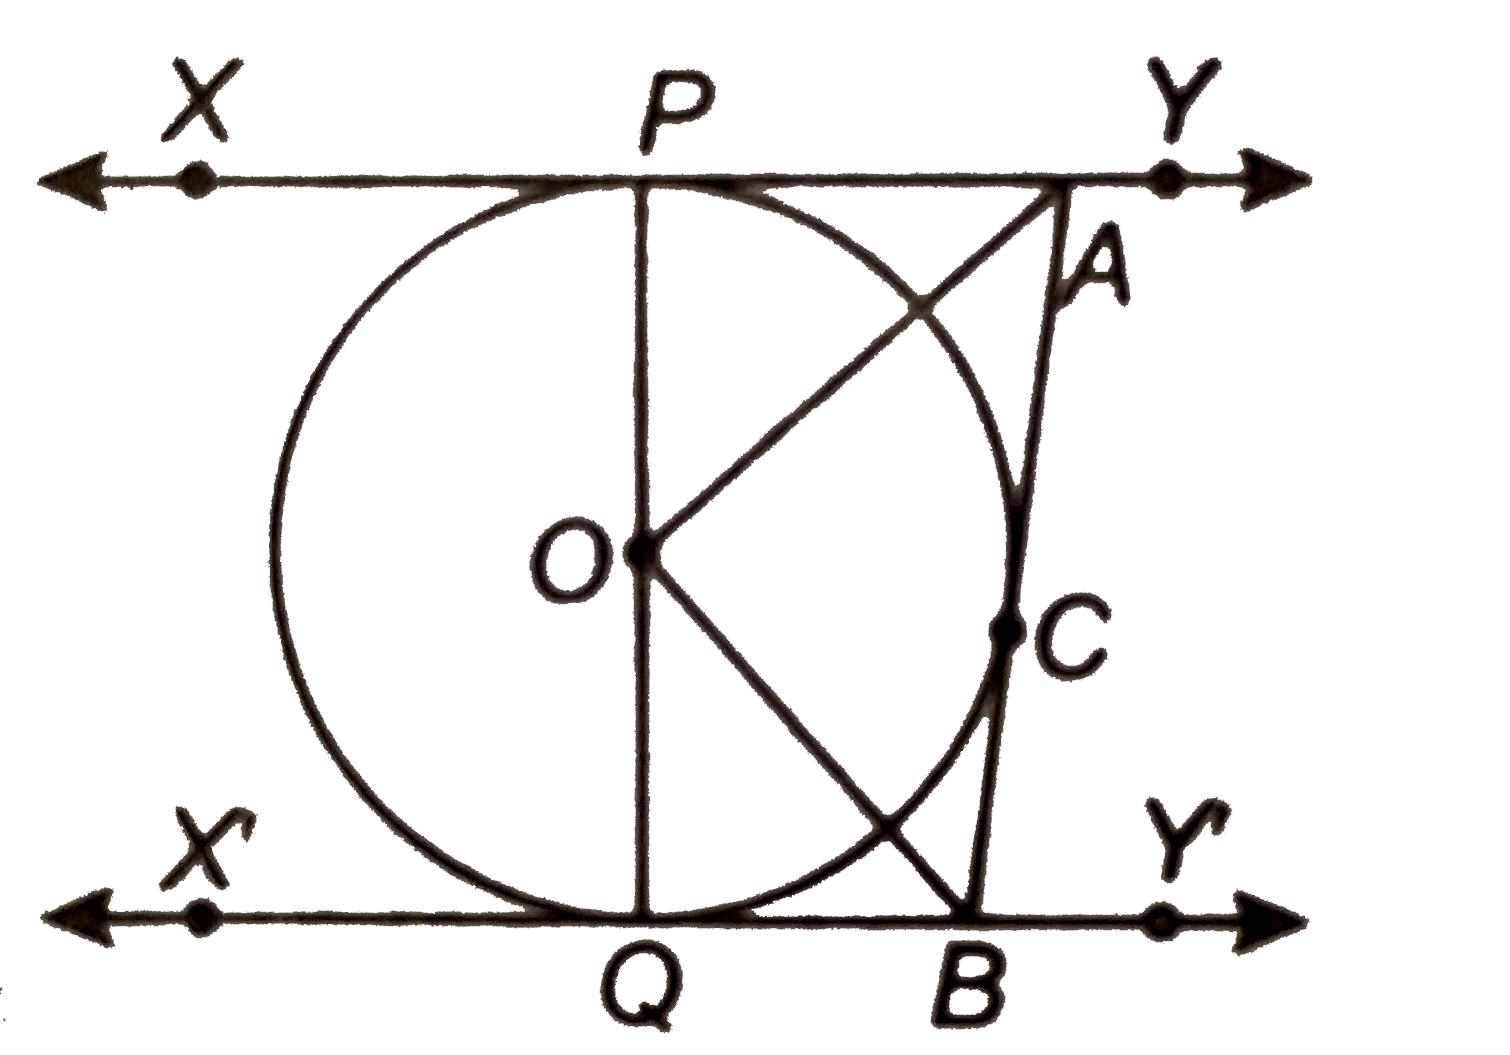 आकृति में XY तथा X'Y', O केन्द्र वाले किसी वृत्त पर दो समान्तर स्पर्श रेखाएँ है और स्पर्श बिन्दु C पर स्पर्श रेखा AB , XY को A तथा X'Y' को B पर प्रतिच्छेद करती है। सिद्ध कीजिए कि angleAOB=90^(@) है।